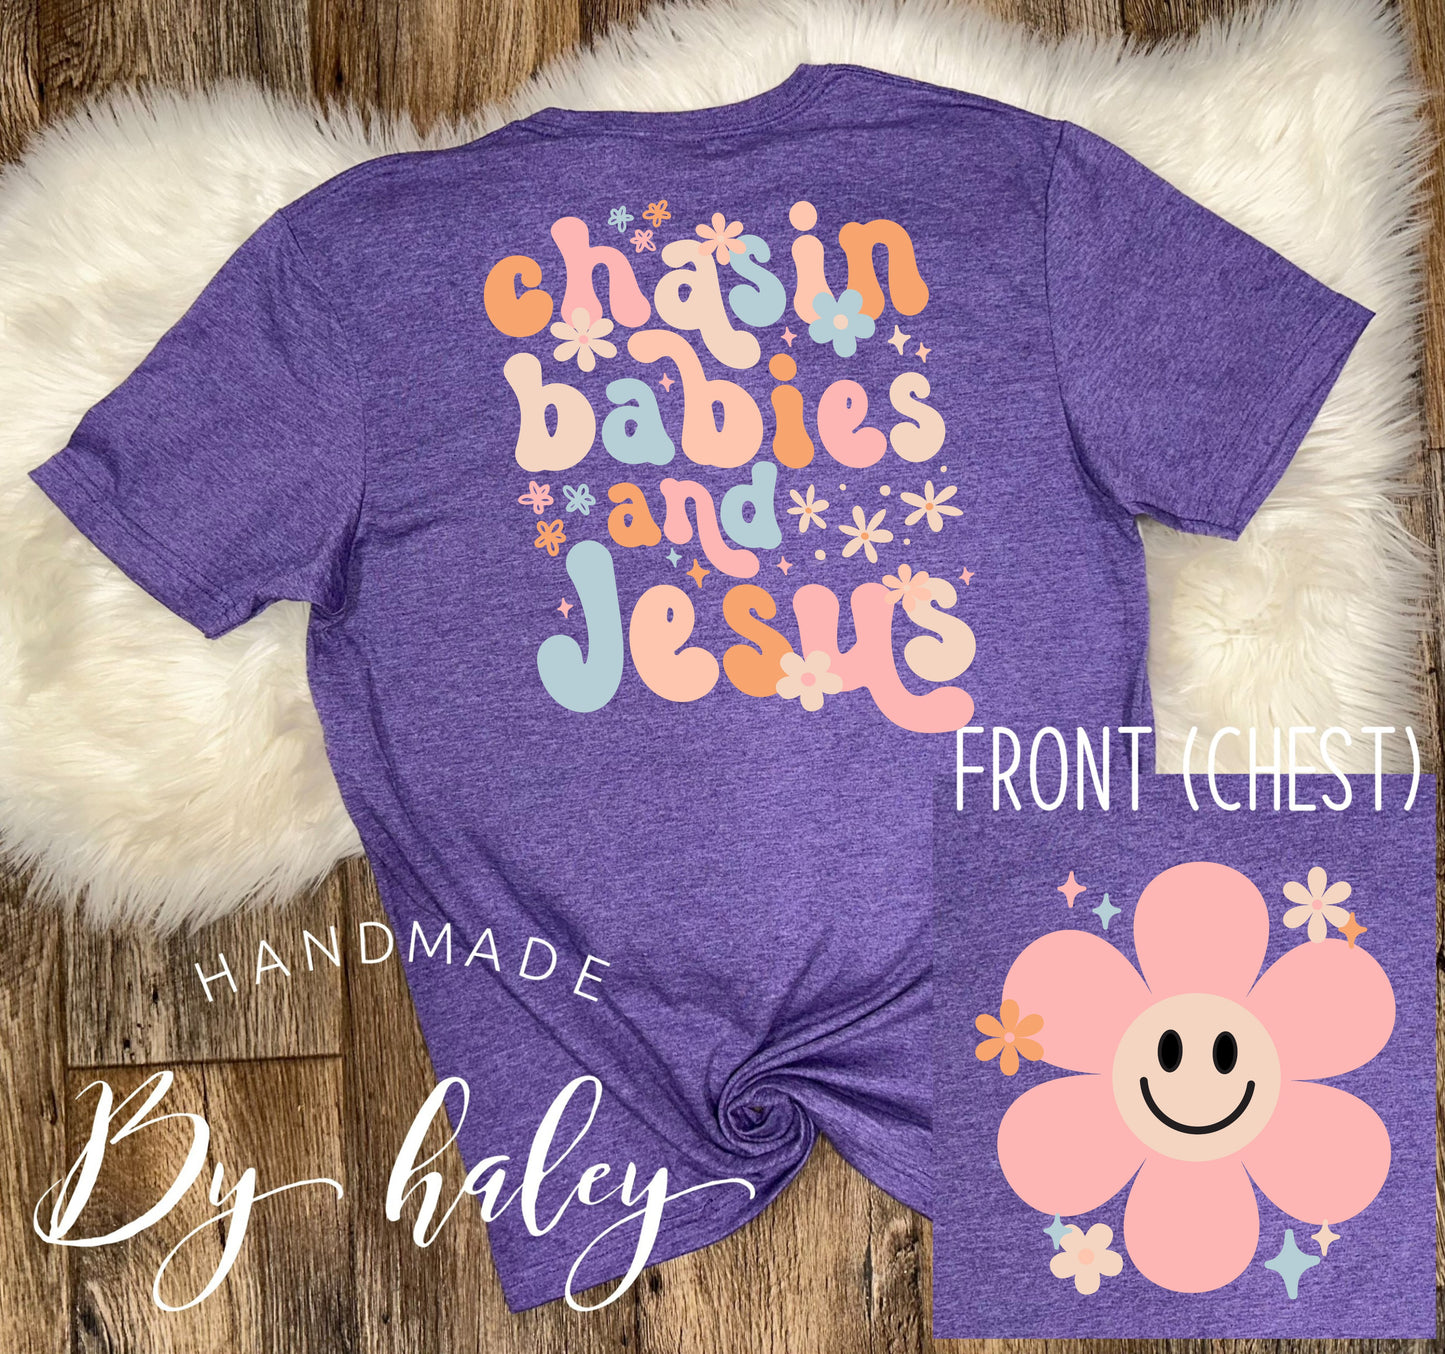 Chasing Babies & Jesus T-Shirt